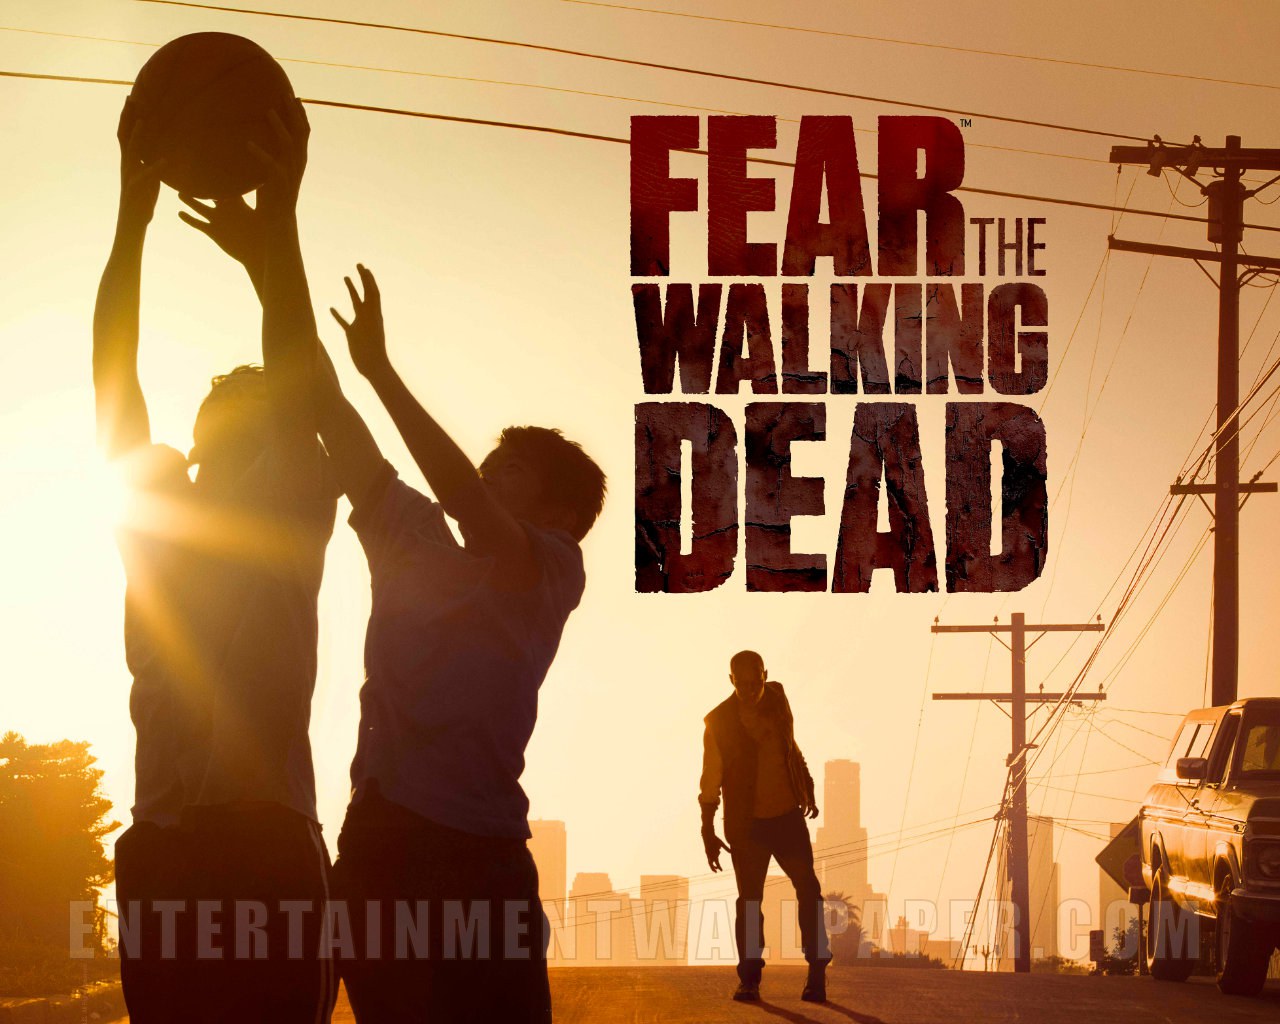 Fear the Walking Dead Wallpaper 1280x1024 Desktop